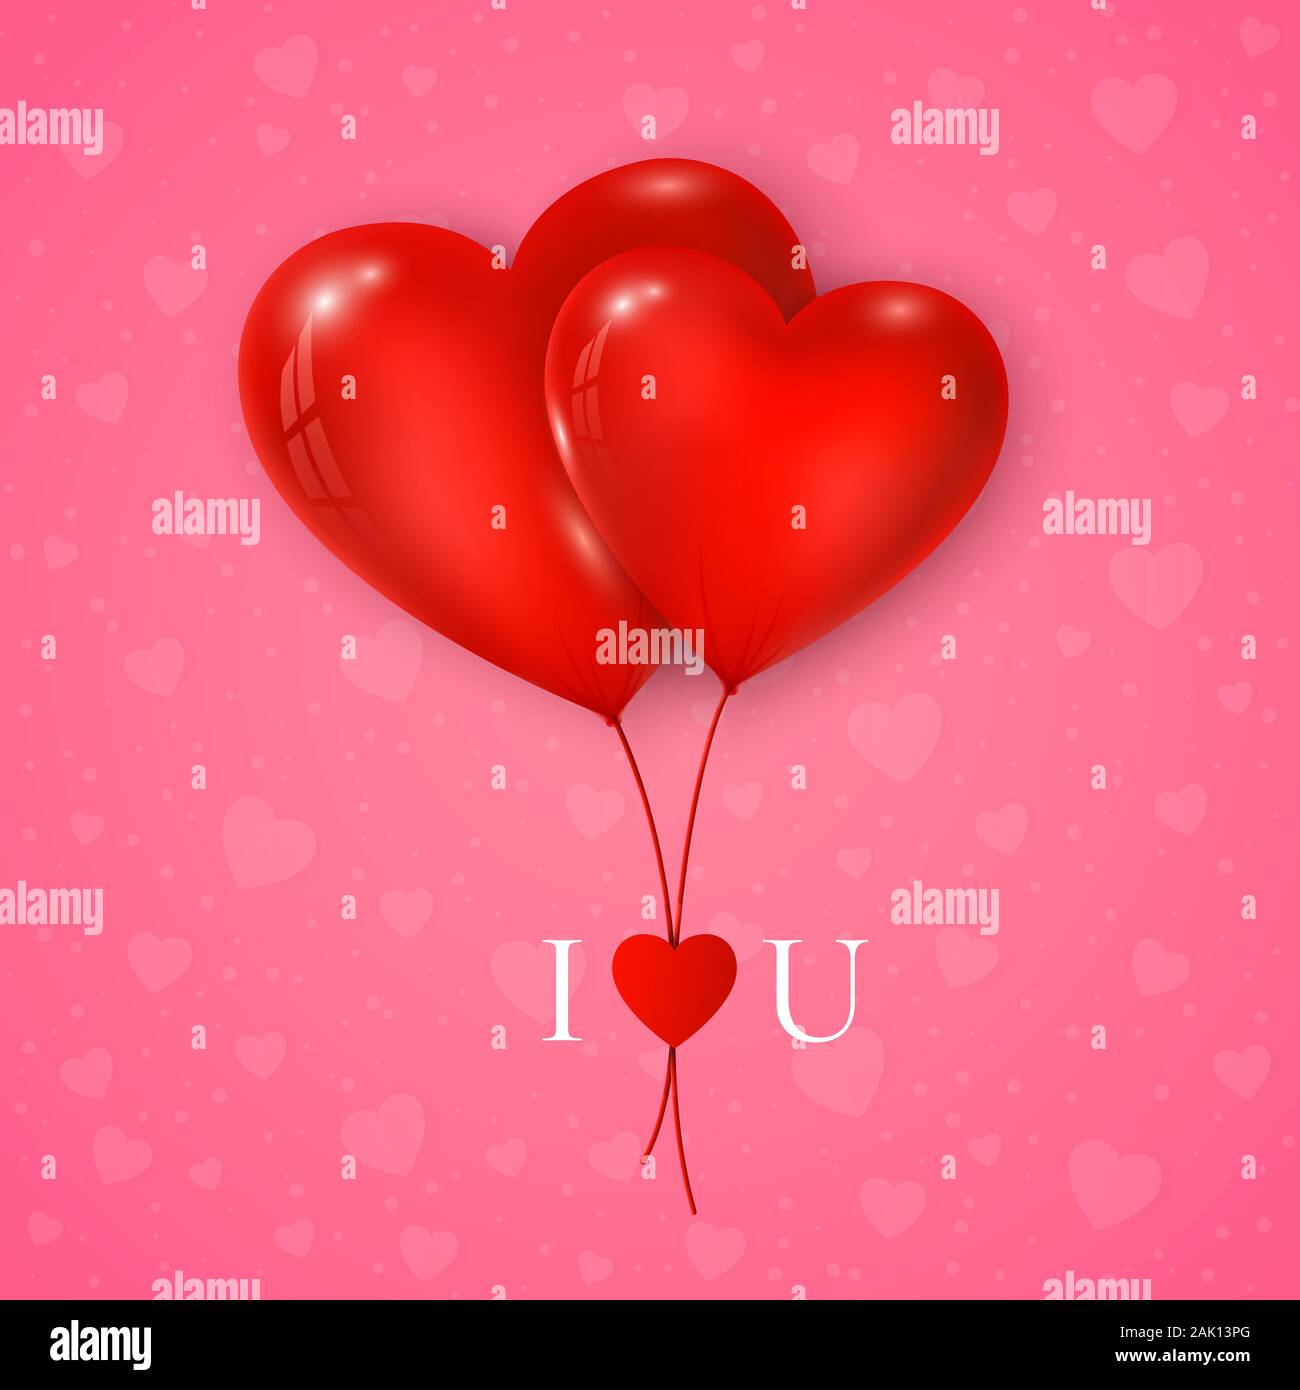 Paar rote Herzen Ballon mit Nachricht, ich liebe Dich. Valentinstag Grusskarten auf rosa Hintergrund. Vektor Stock Vektor